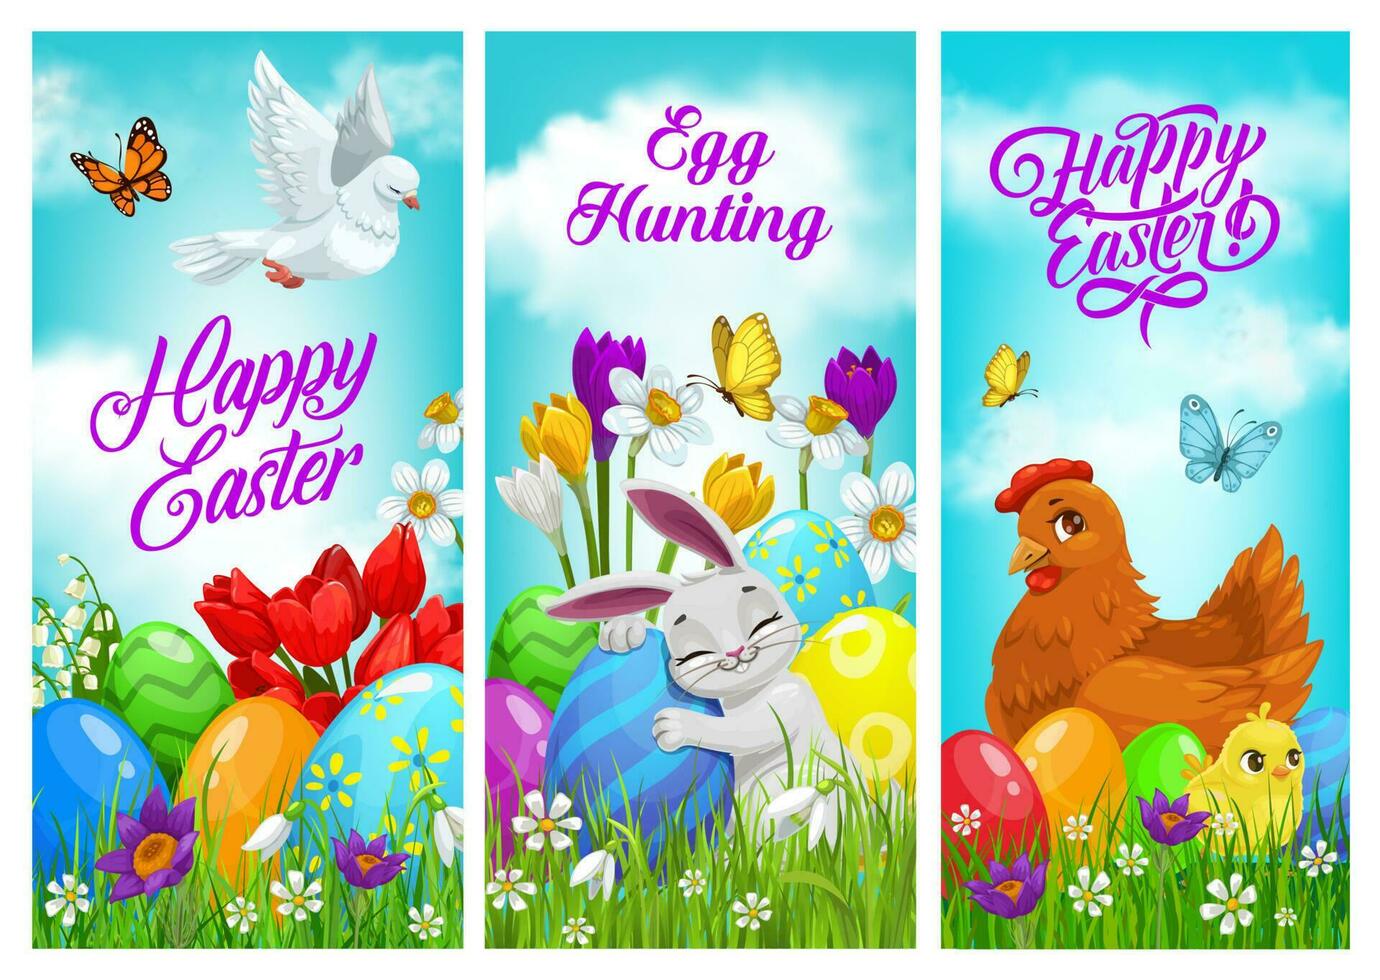 contento Pascua de Resurrección pancartas, vectores saludo tarjetas conjunto